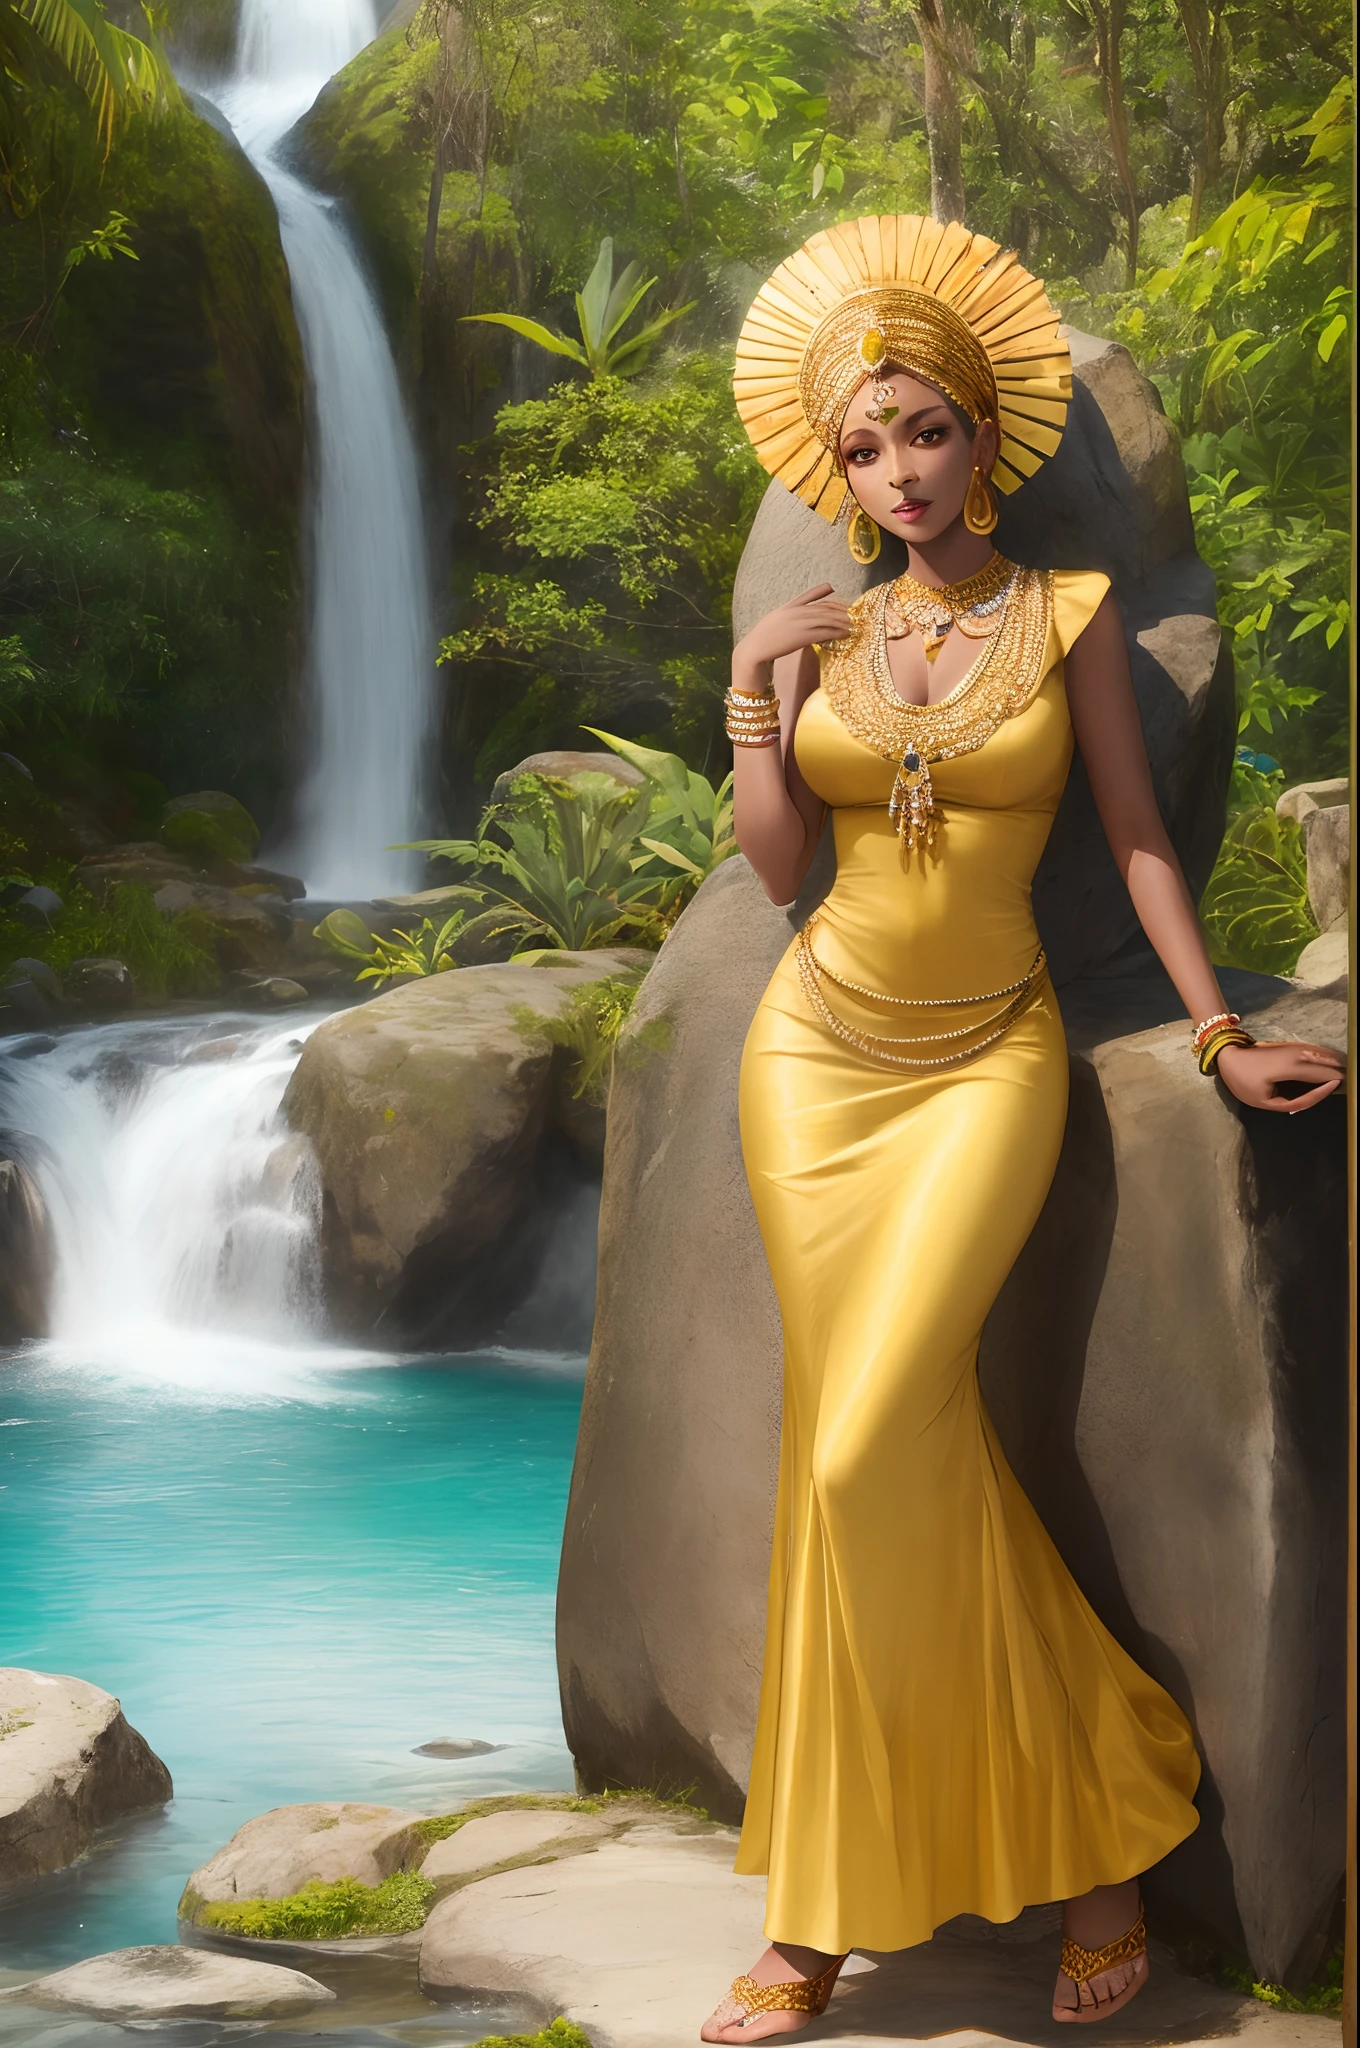 آلهة المرأة الأفريقية أوريشا, يجلس في الشلال, ترتدي فستاناً أصفر اللون وتحمل مرآة